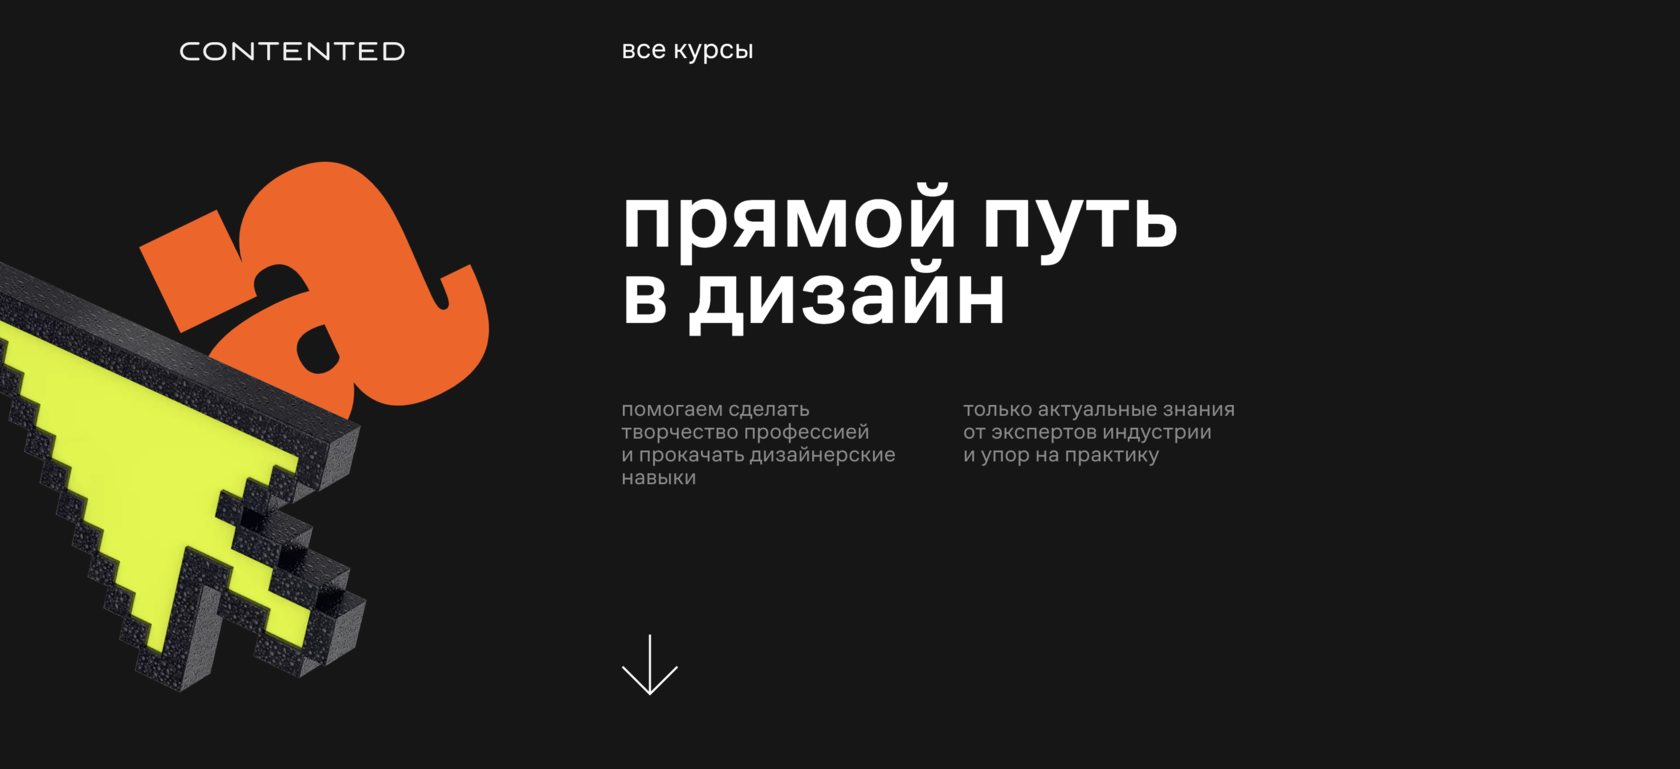 Курсы веб-дизайна в Минске за 1.5 месяца!